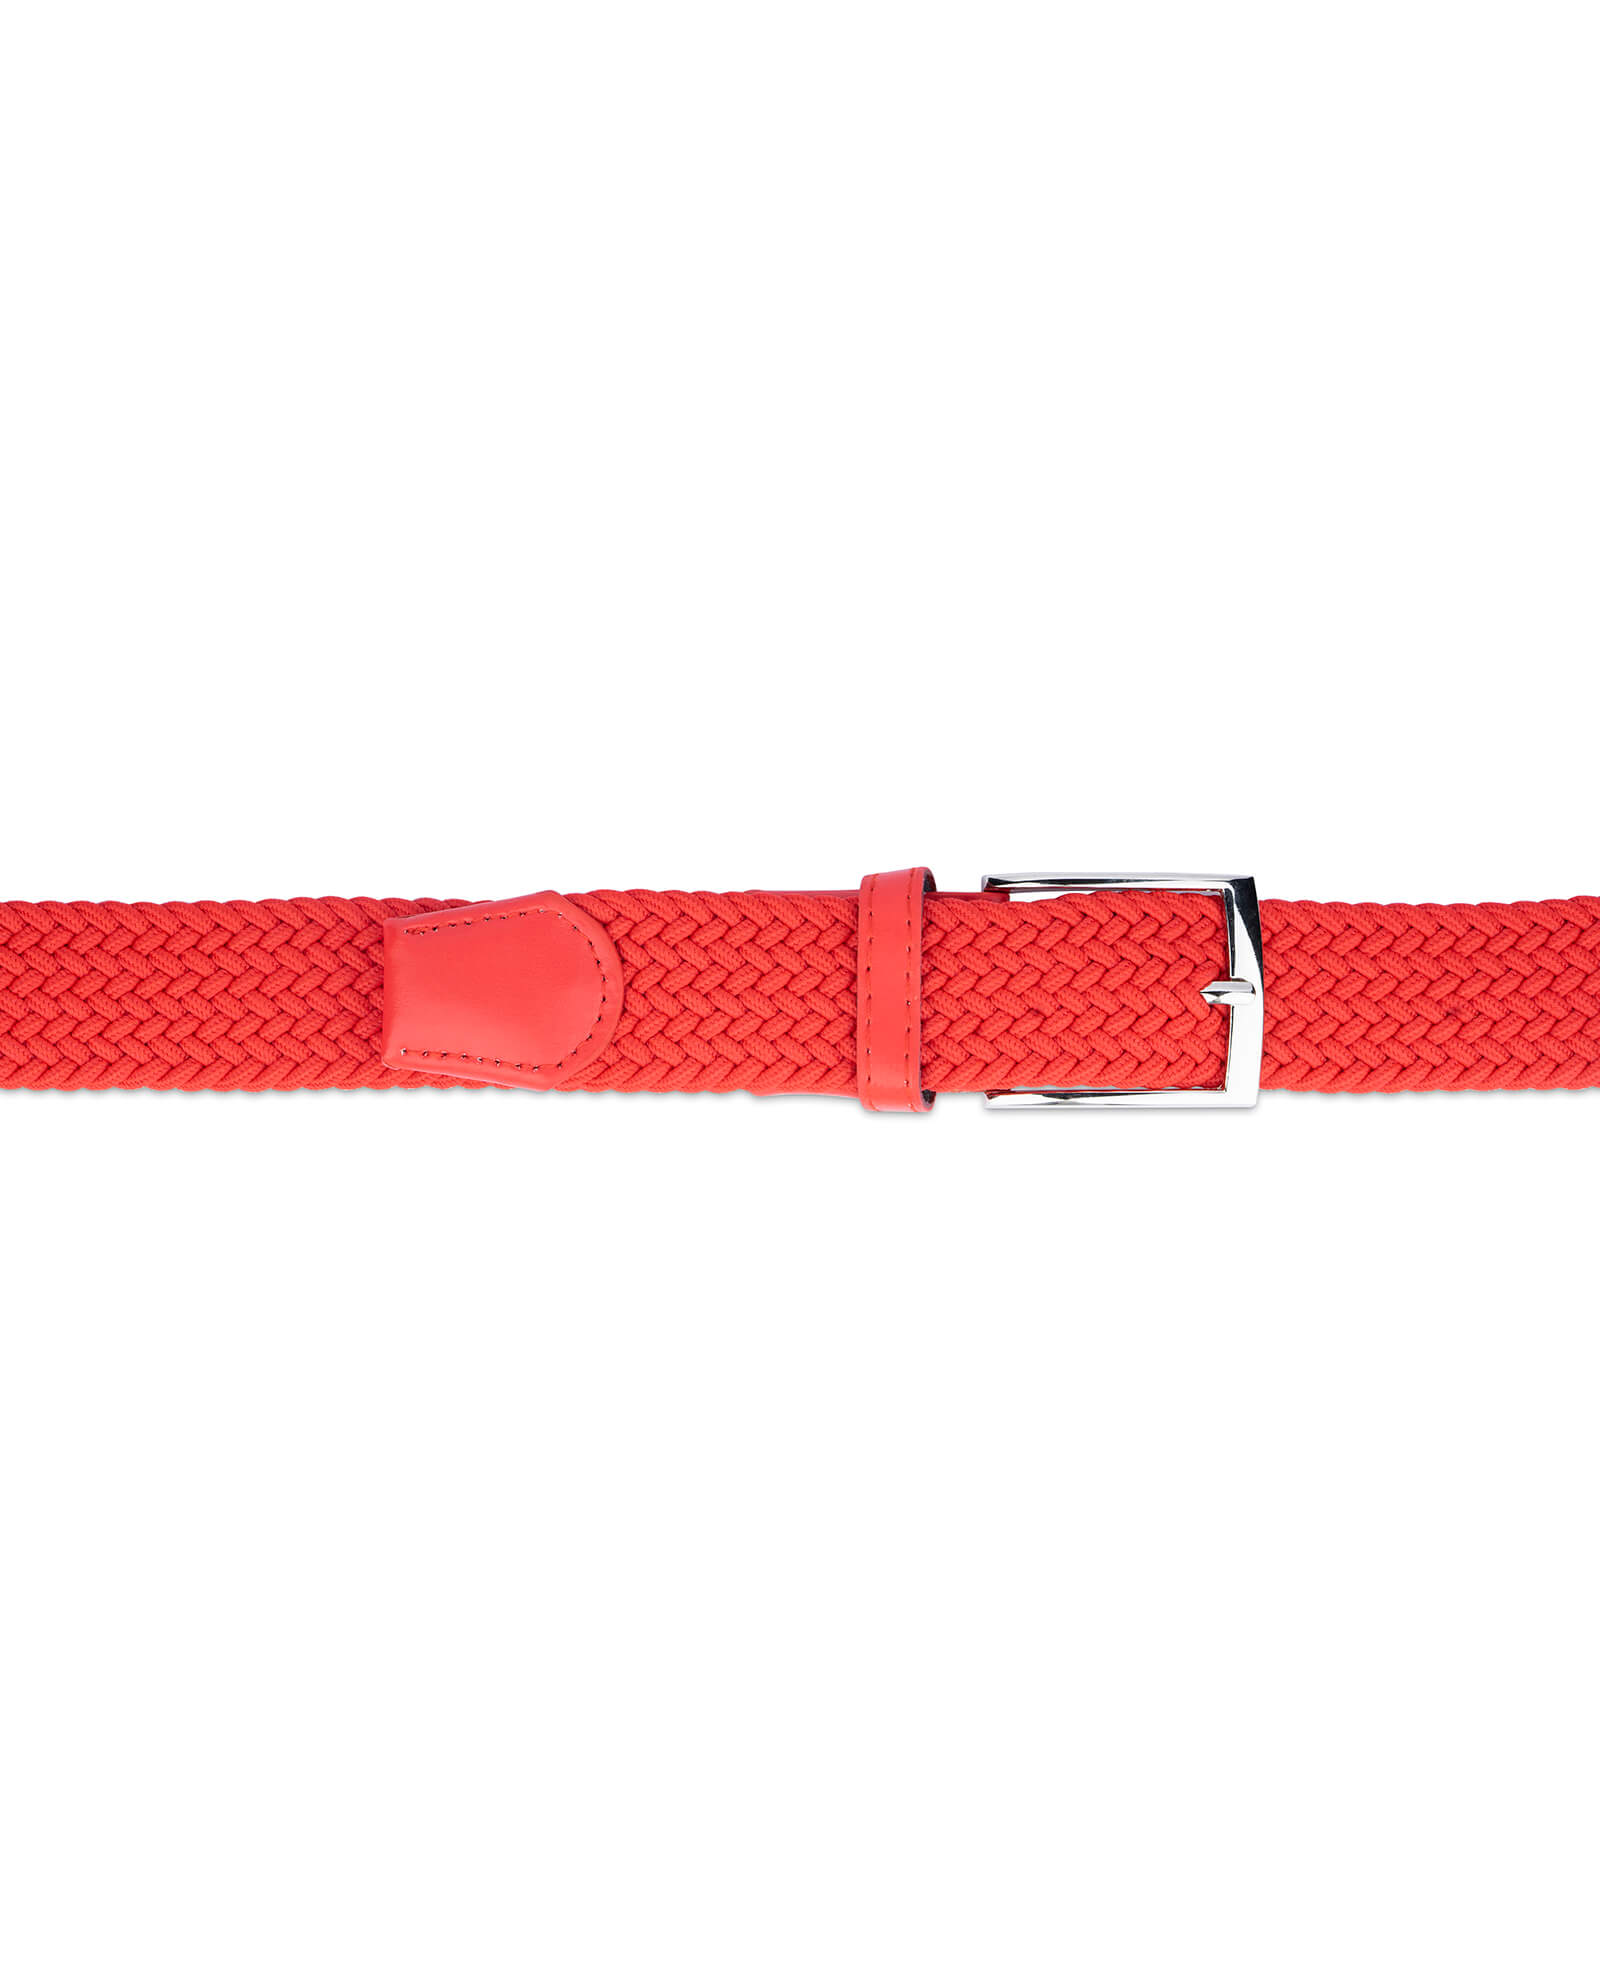 Buy Mens Red Stretch Belt | LeatherBeltsOnline.com